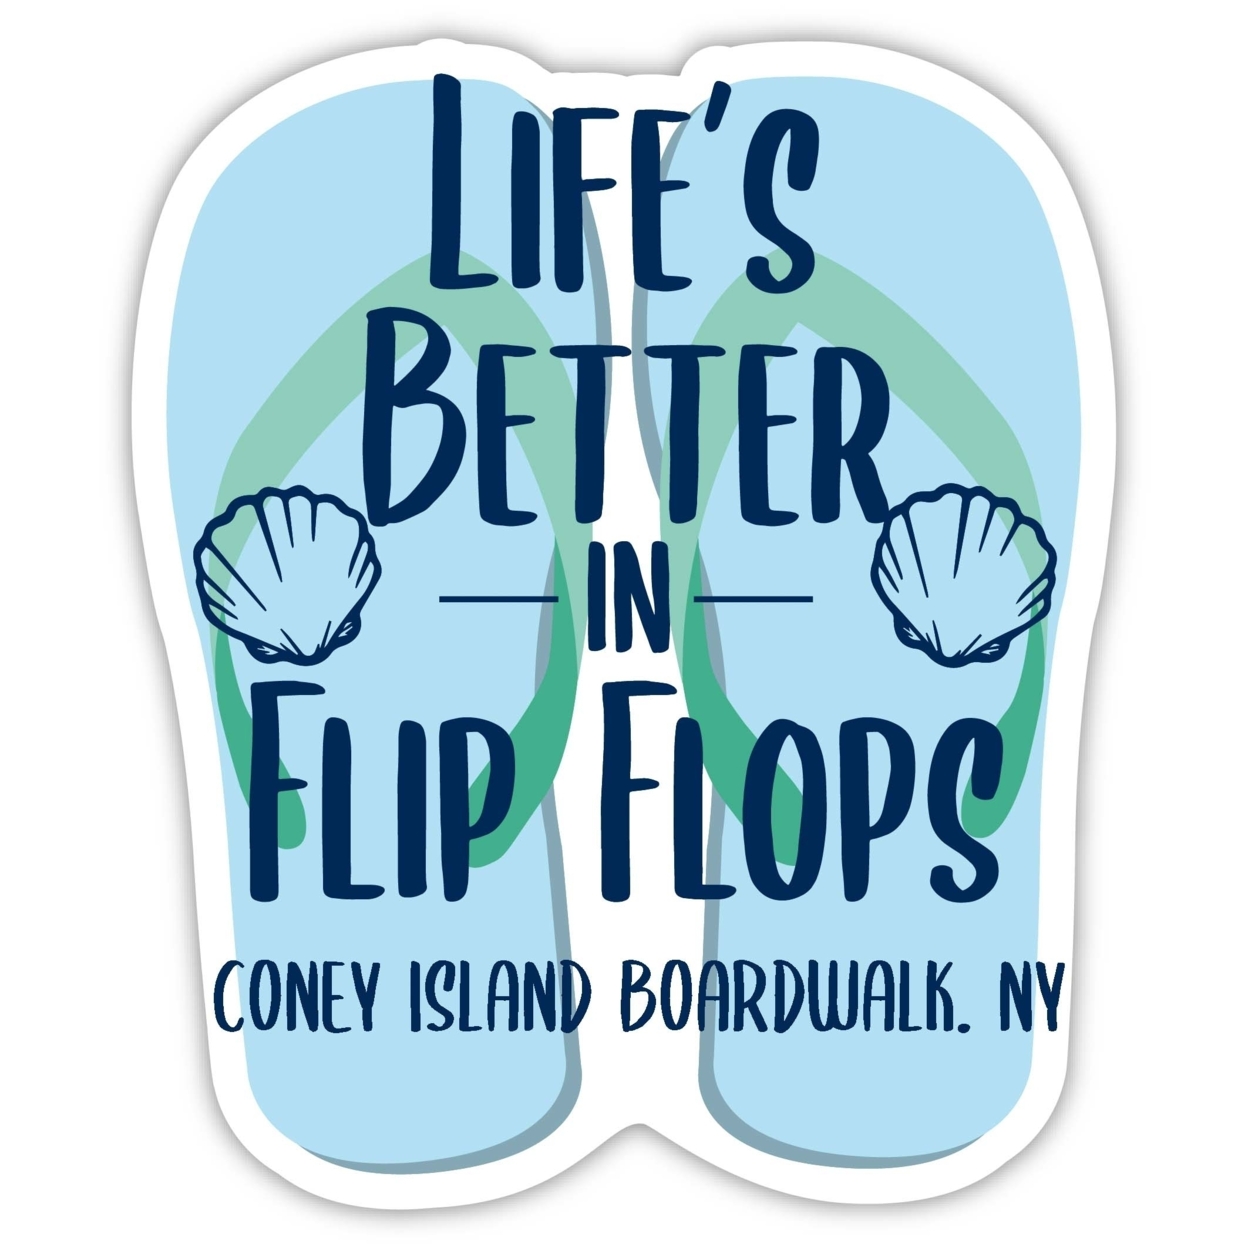 Coney Island Boardwalk New York Souvenir 4 Inch Vinyl Decal Sticker Flip Flop Design